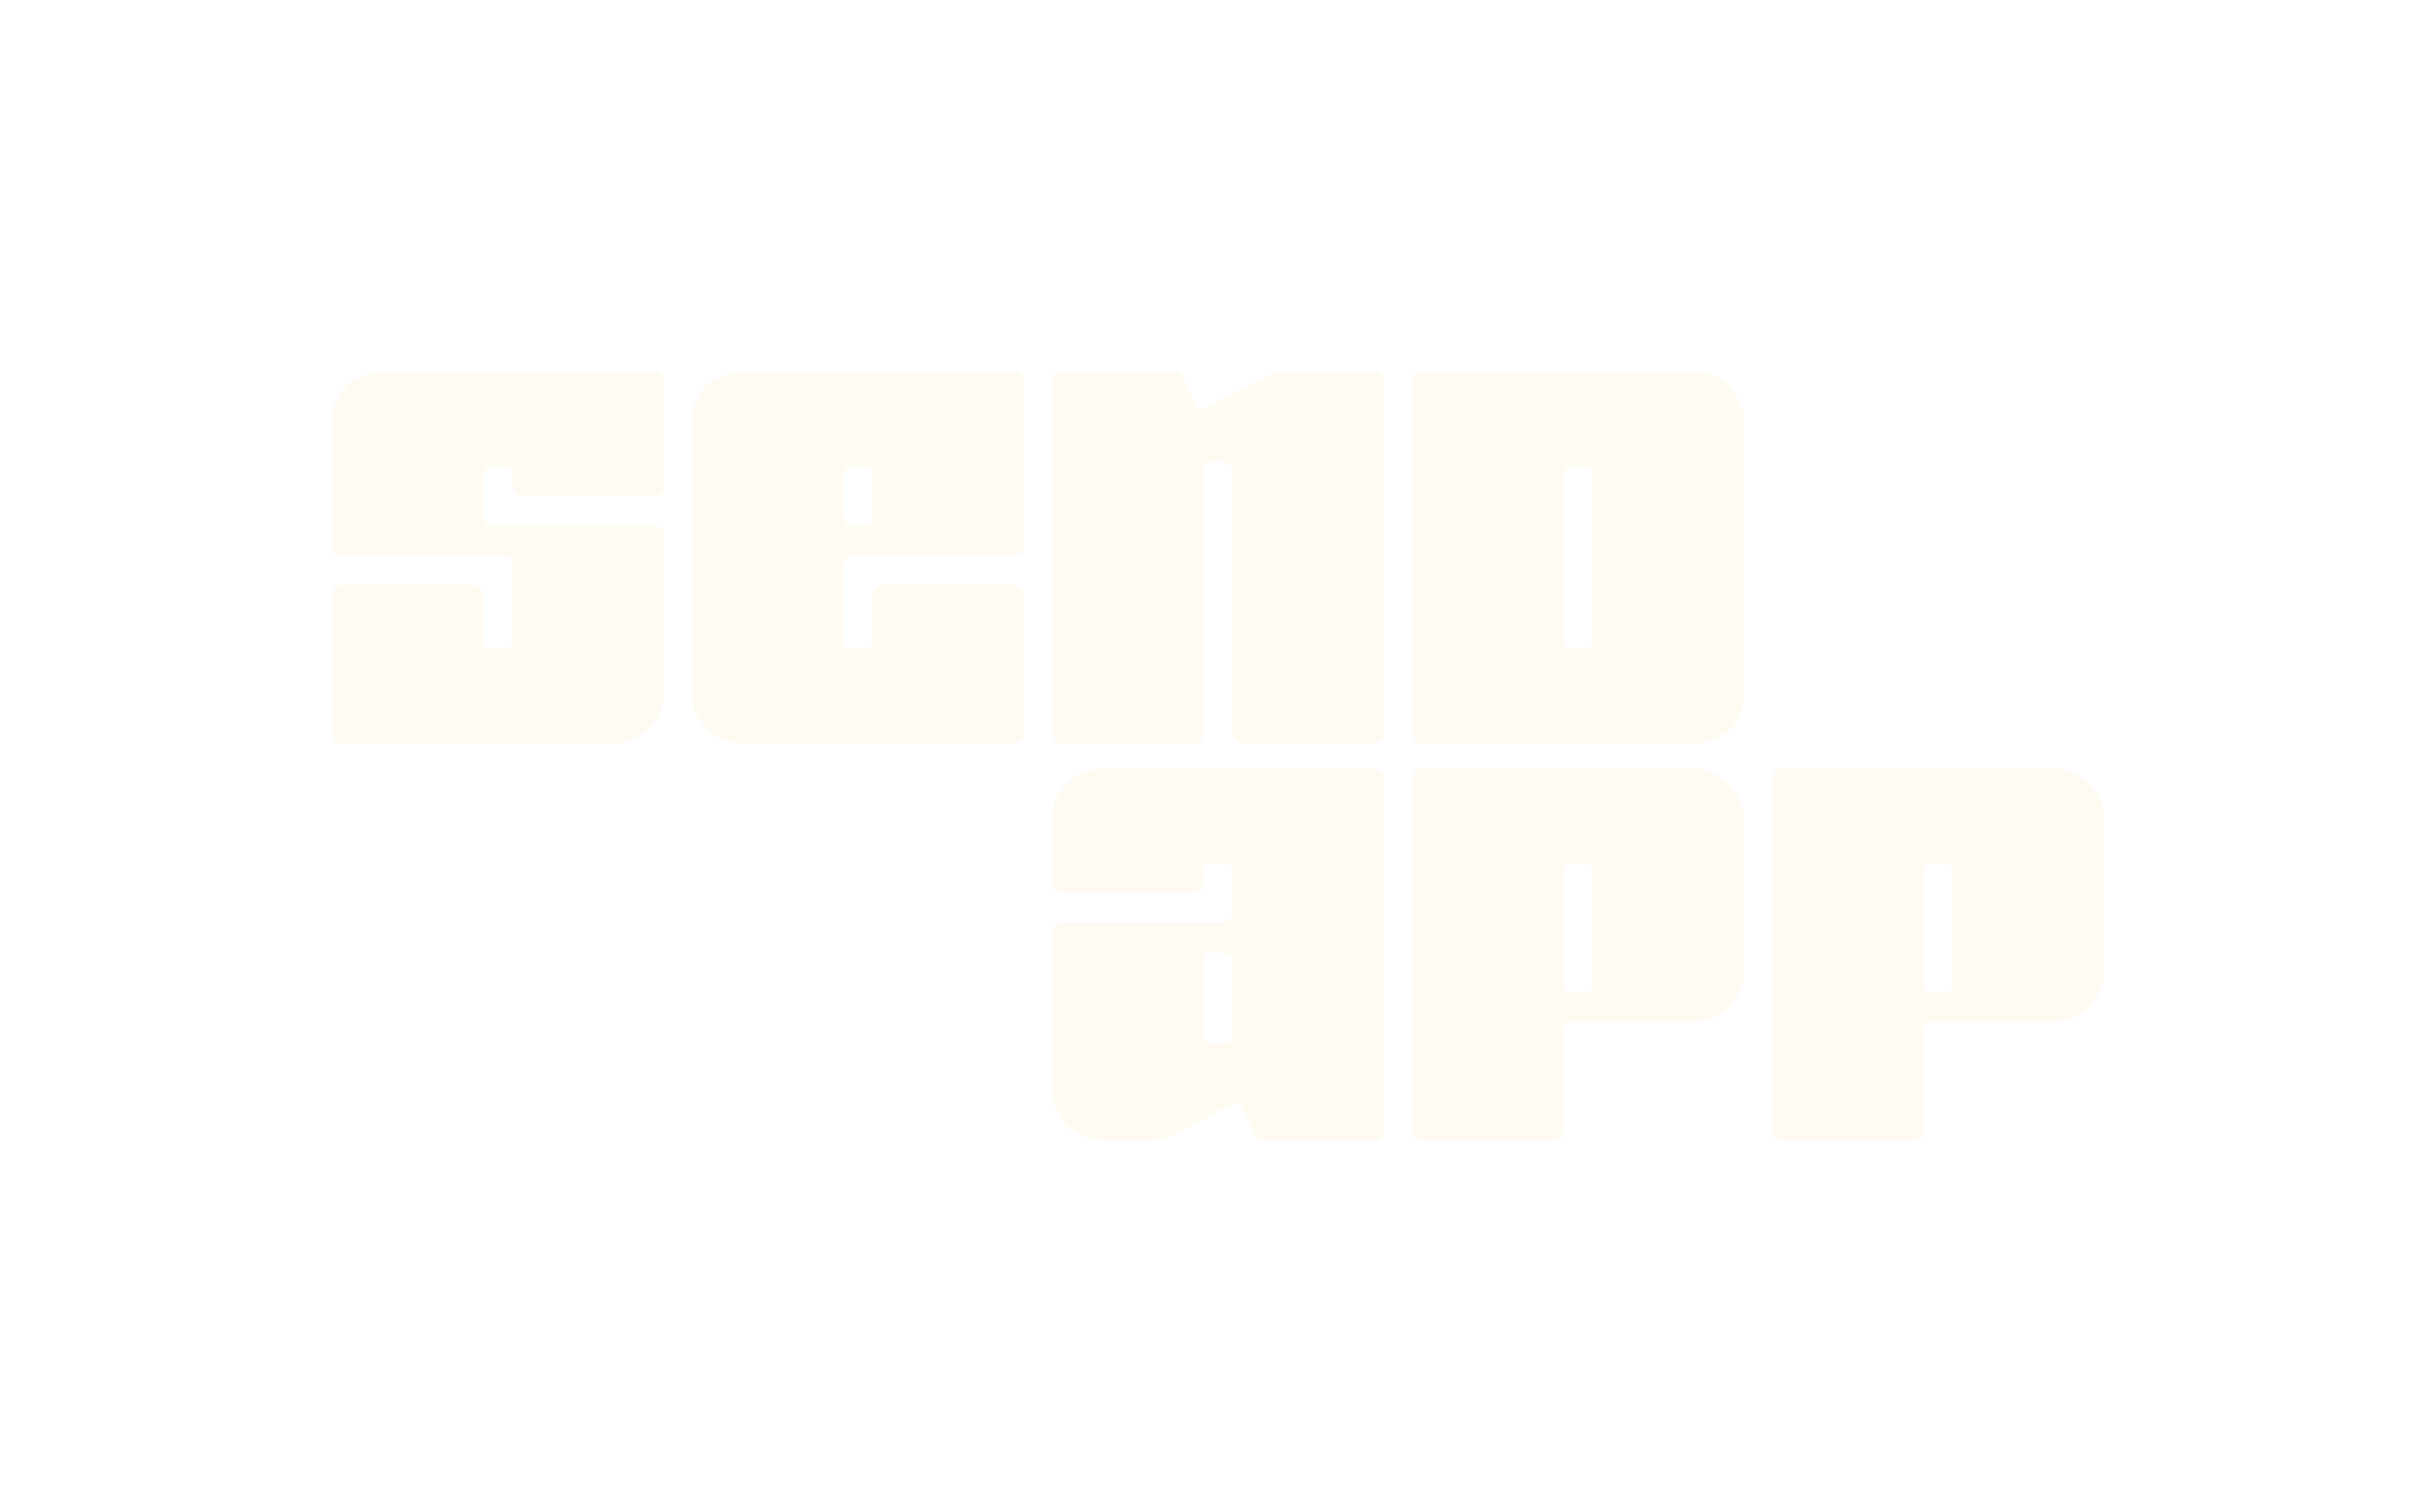 Send app logo